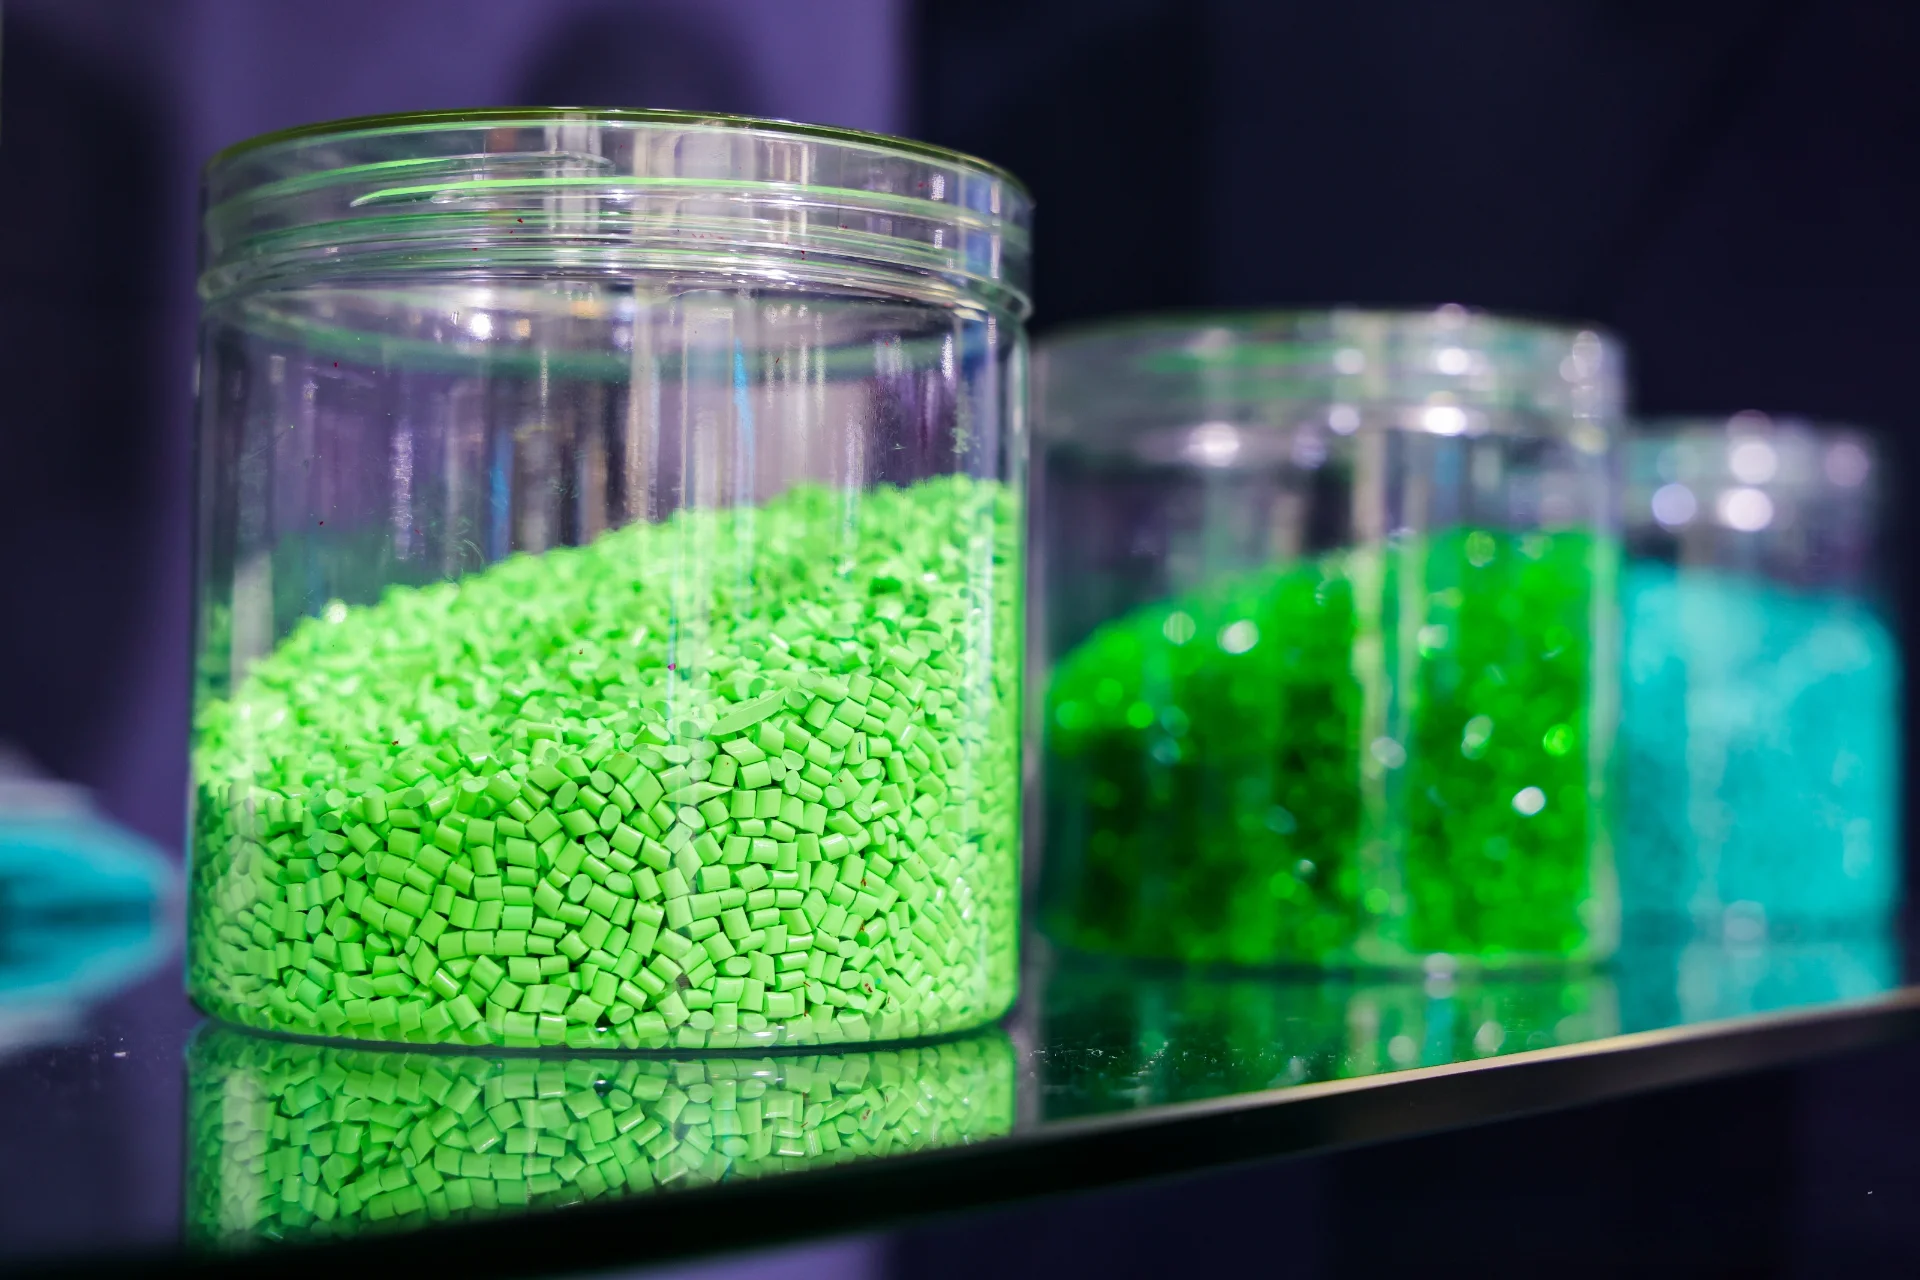 Slika prikazuje izbliza tri staklene posude koje sadrže plastične granule u boji. Staklenka u prvom planu ispunjena je svijetlo zelenim granulama, dok staklenke u pozadini sadrže različite nijanse zelenih i plavih granula. Ove se granule obično koriste kao sirovina u industriji plastike za proizvodnju raznih plastičnih proizvoda kroz postupke poput injekcijskog prešanja i ekstruzije.